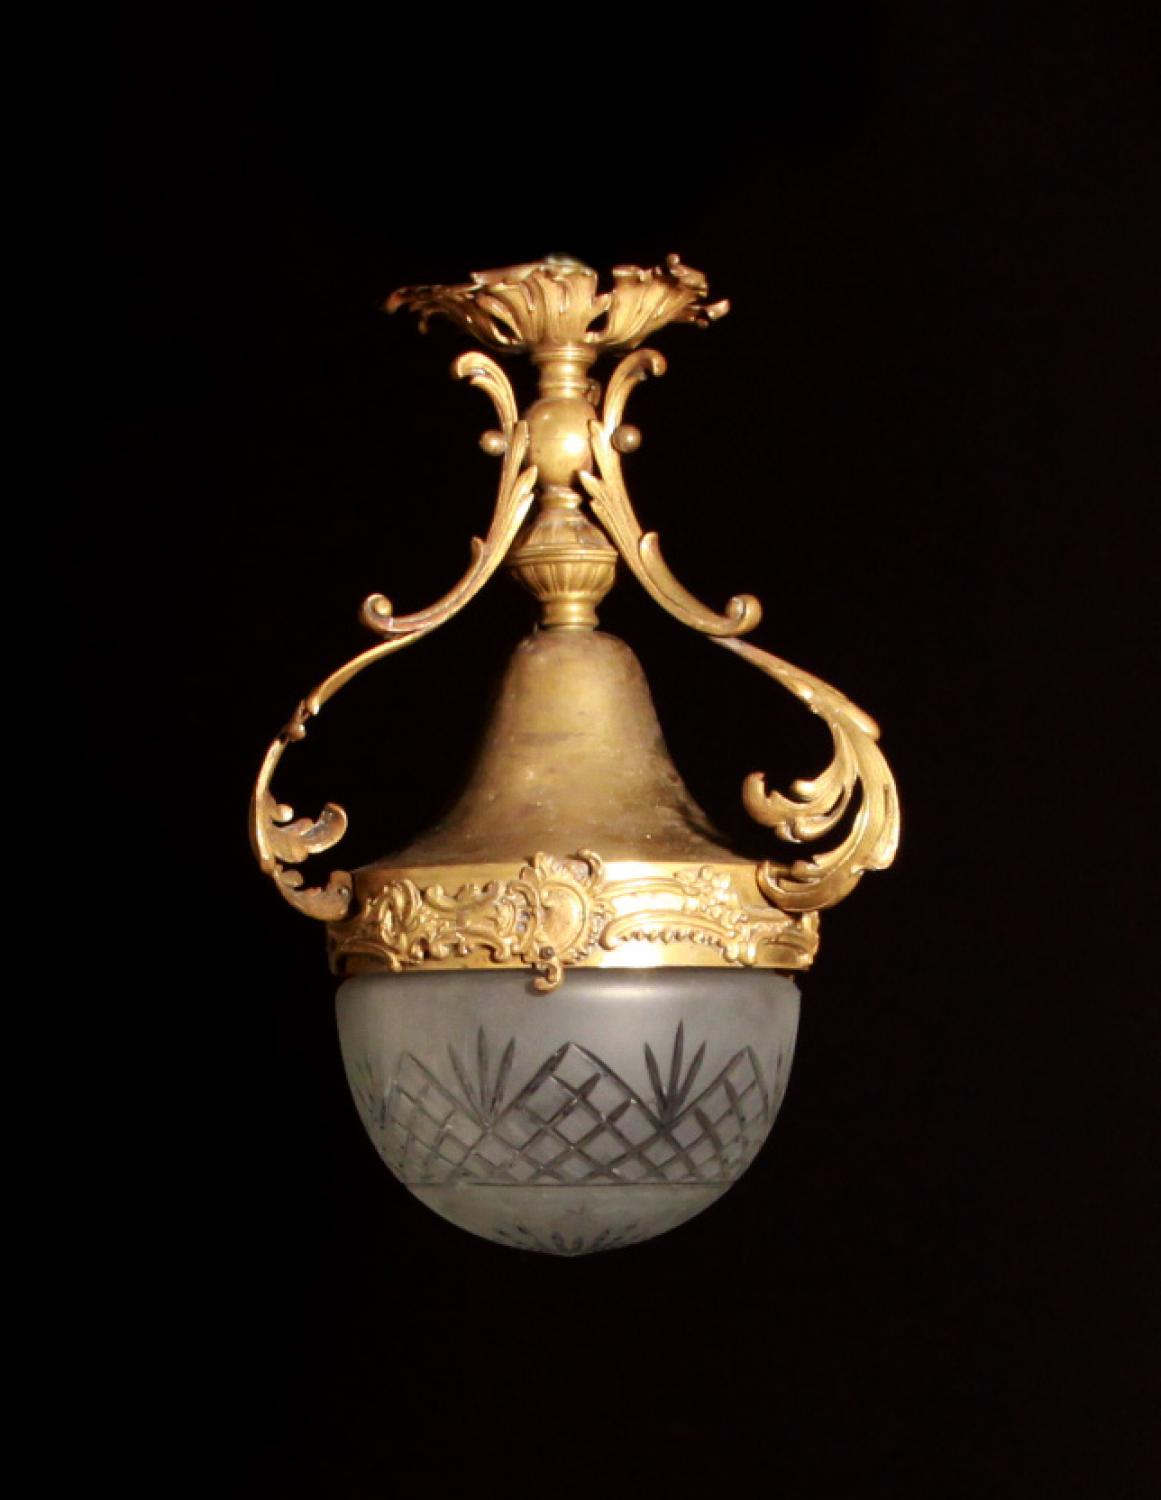 A small Rococo lantern